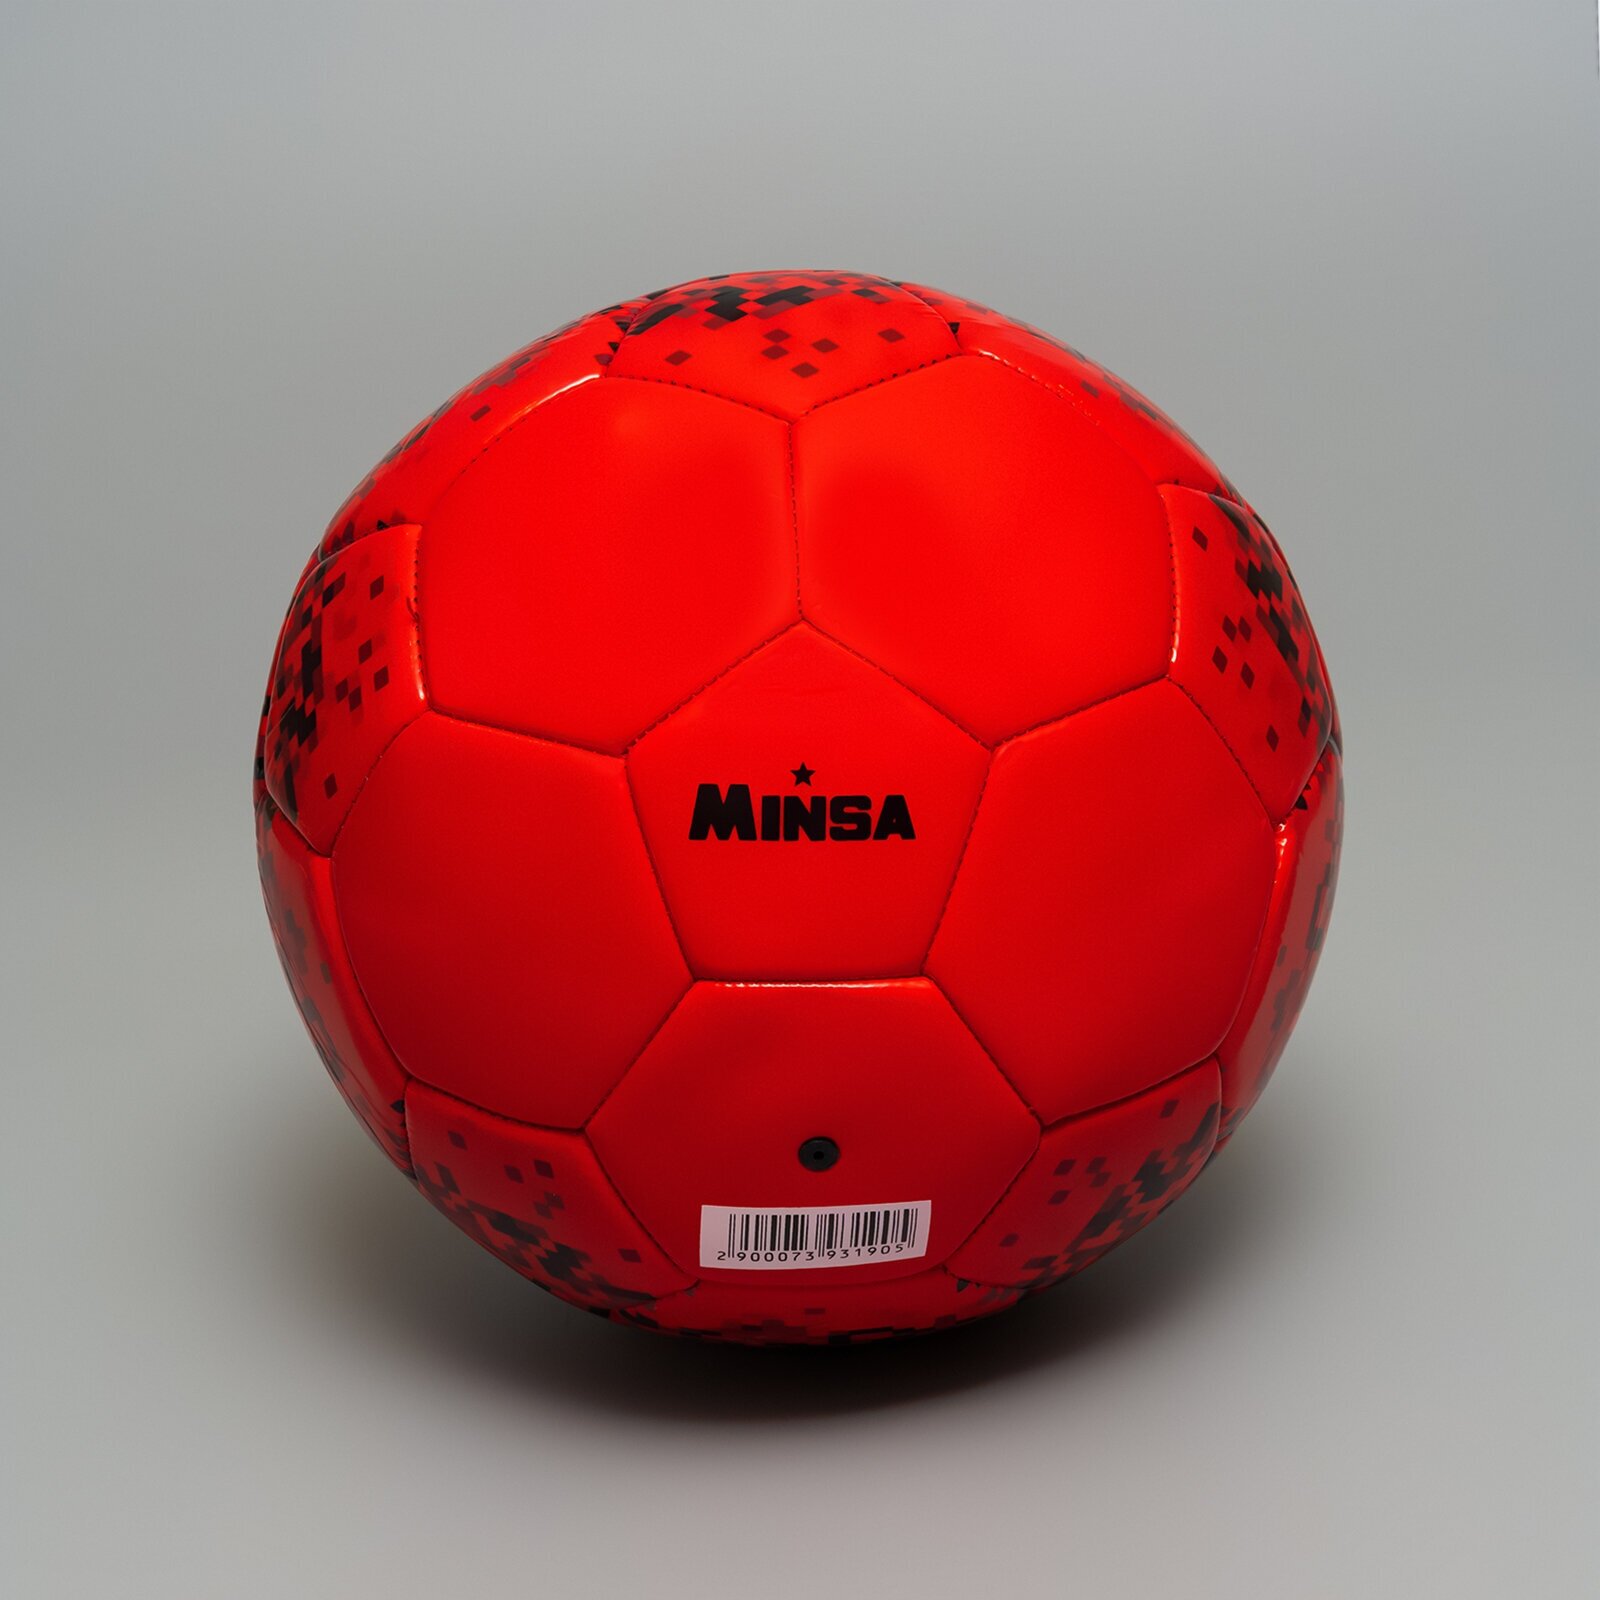 Мяч футбольный MINSA, PU, машинная сшивка, 32 панели, размер 5, вес 360 г, цвет черный, красный